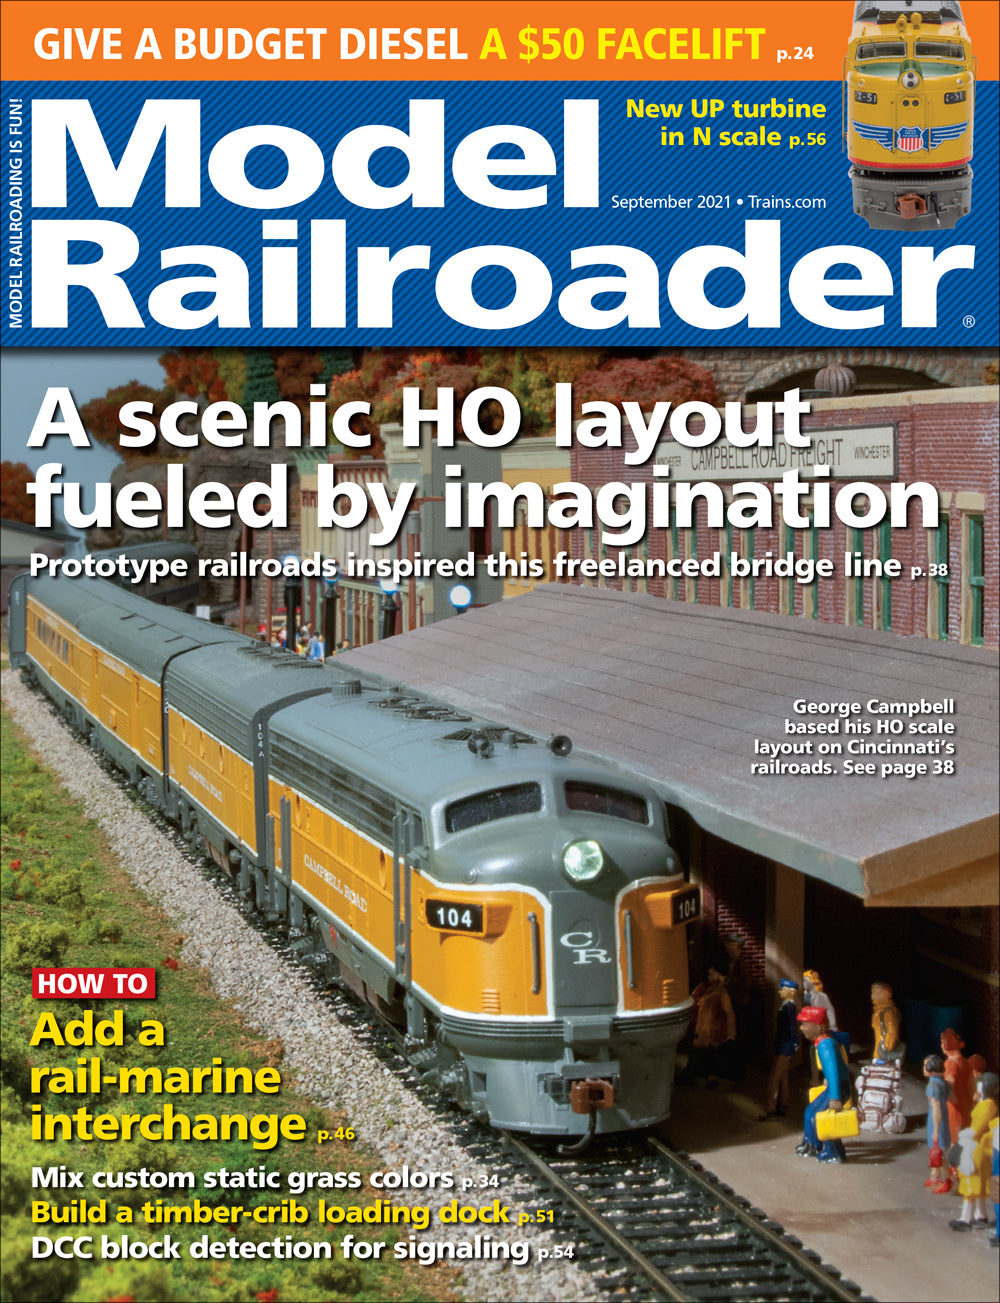 Model Railroader - Magazine - Vol. 88 - Issue 09 - September 2021